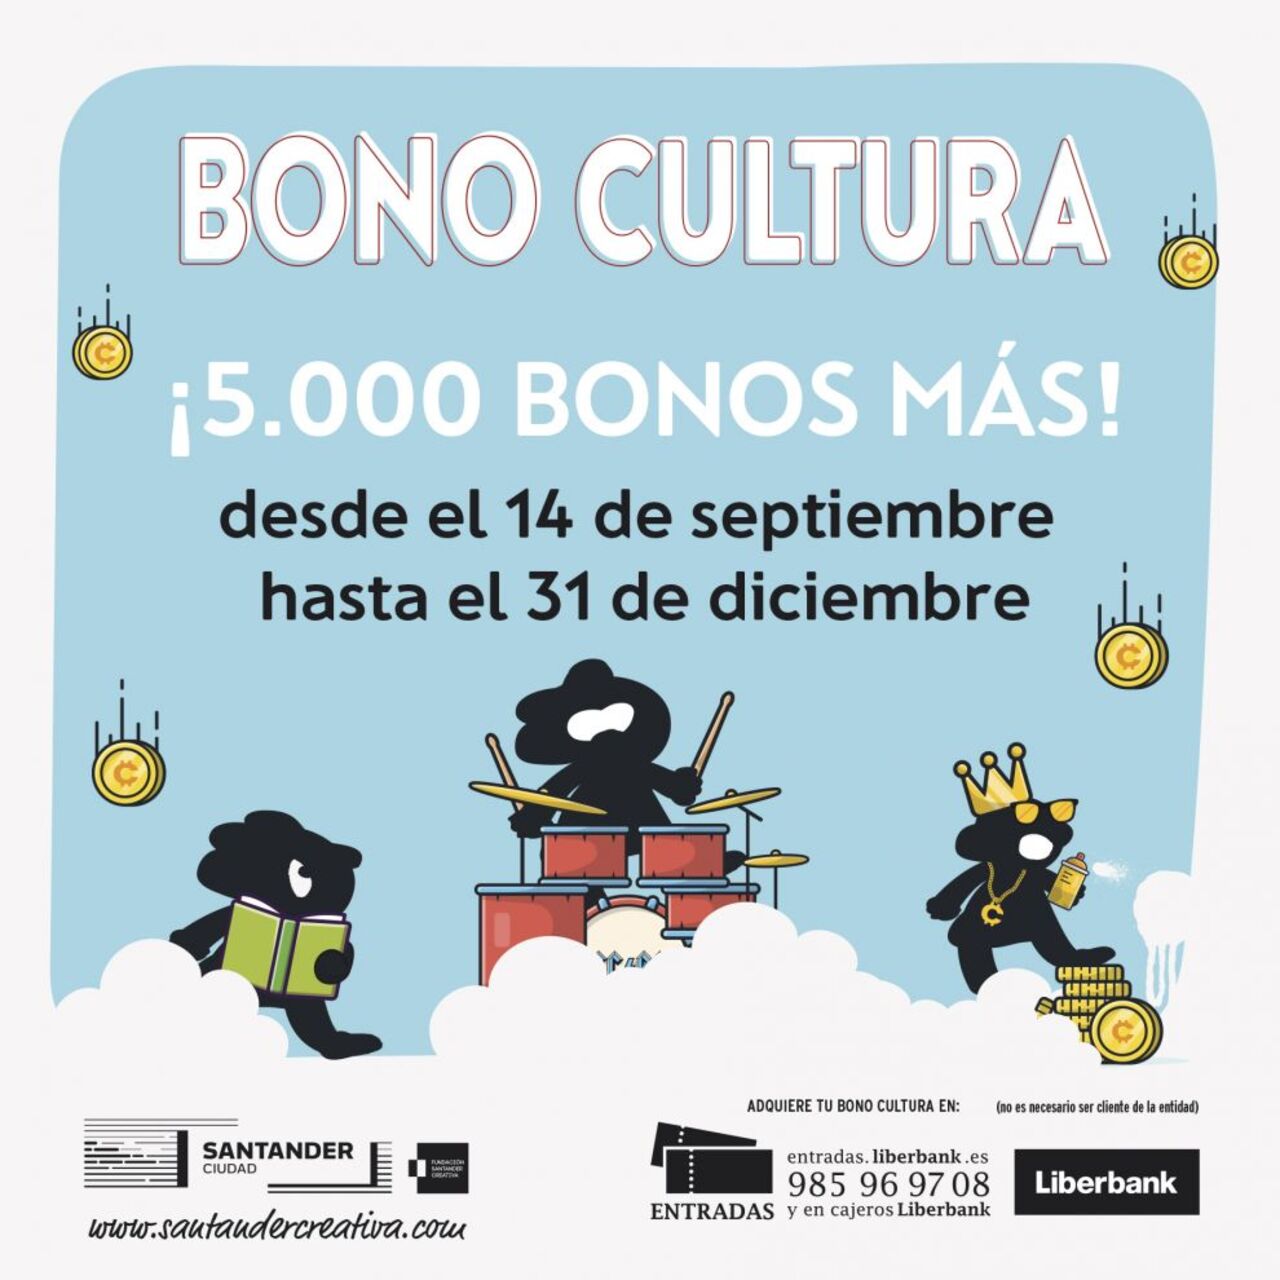 La campaña "Bono Cultura 2020" pone de nuevo a la venta 5.000 bonos e incorpora tres espacios